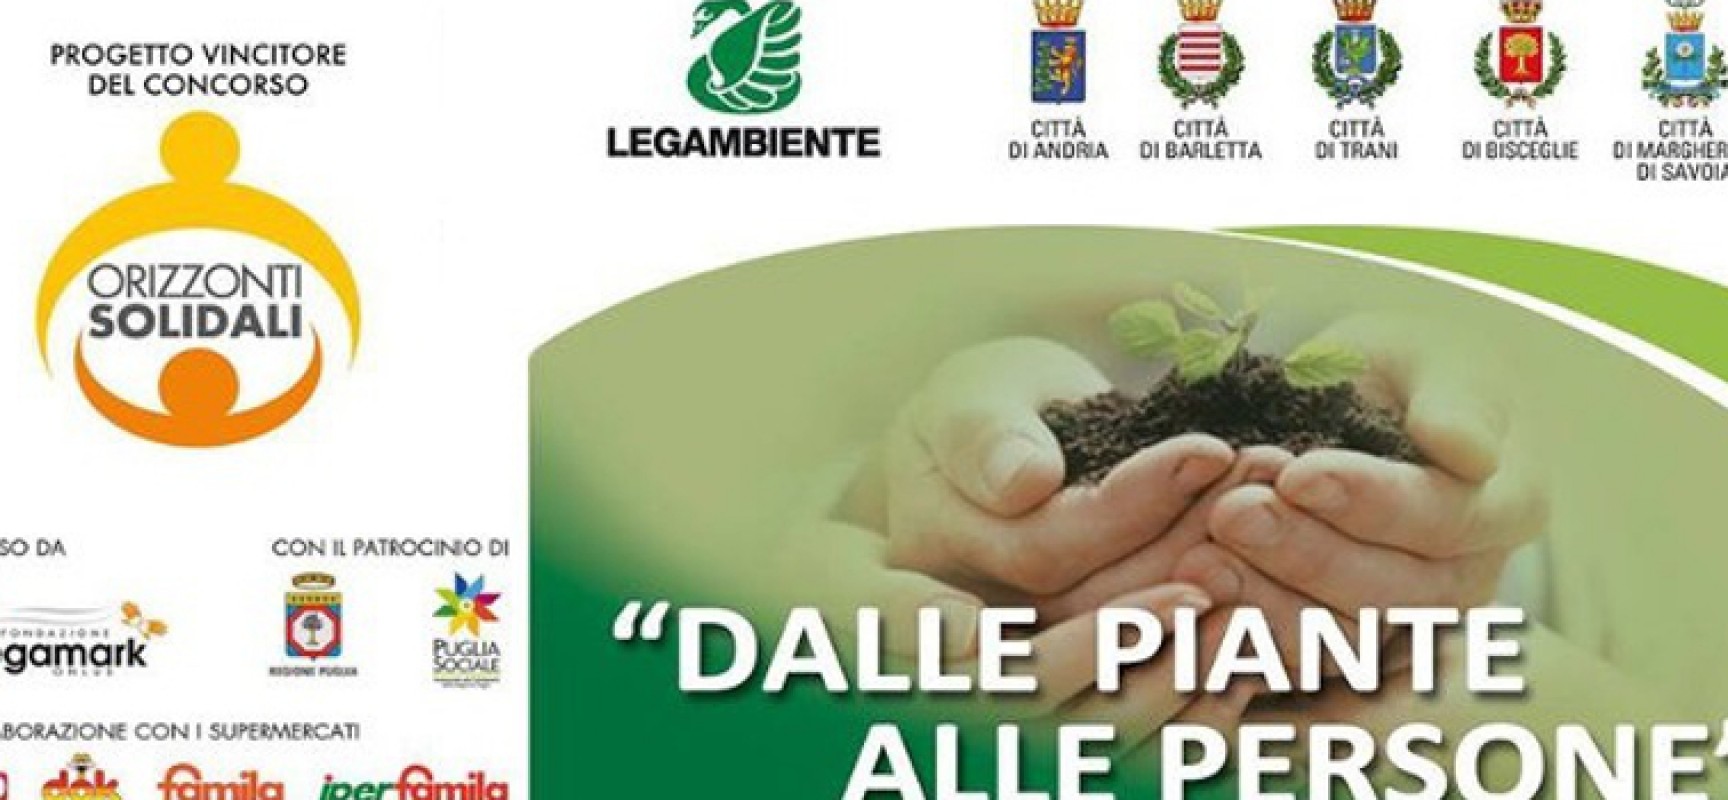 “Dalle piante alle persone”, conferenza stampa in Provincia su progetto recupero aree degradate